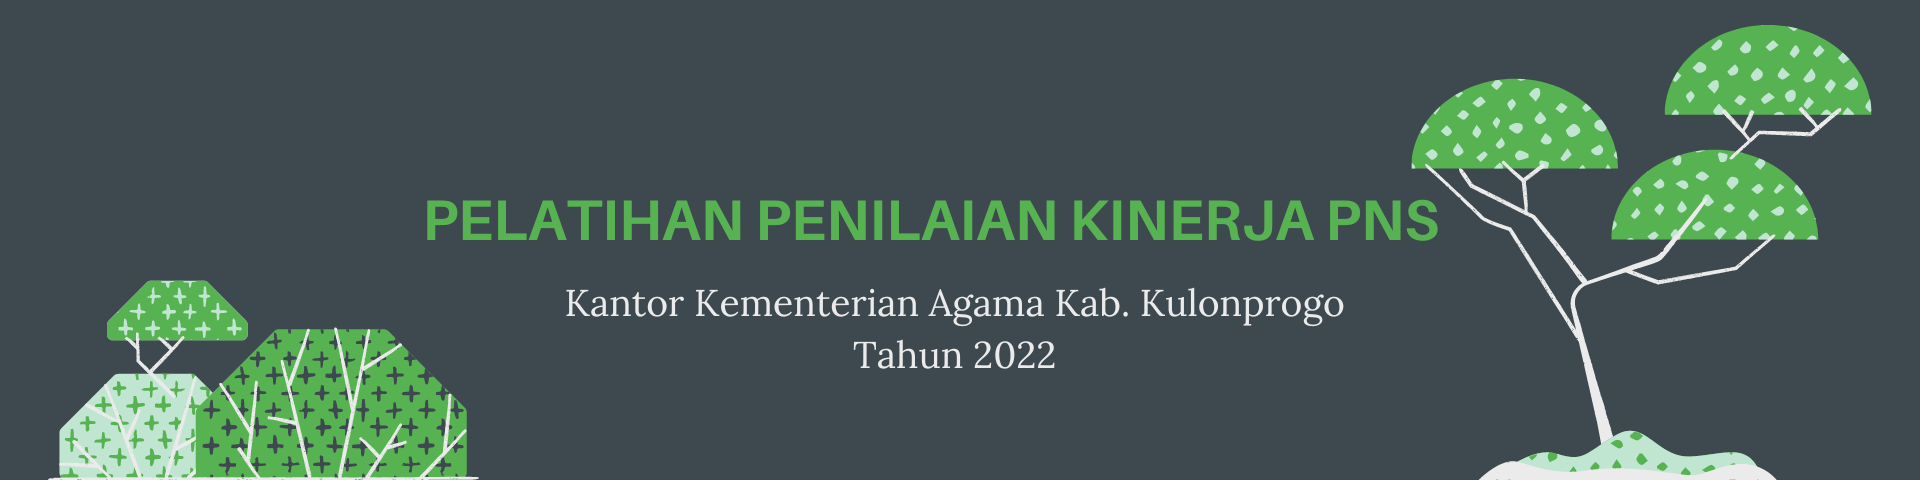 2022 Teknis Penilaian Kinerja PNS Kab. Kulonprogo